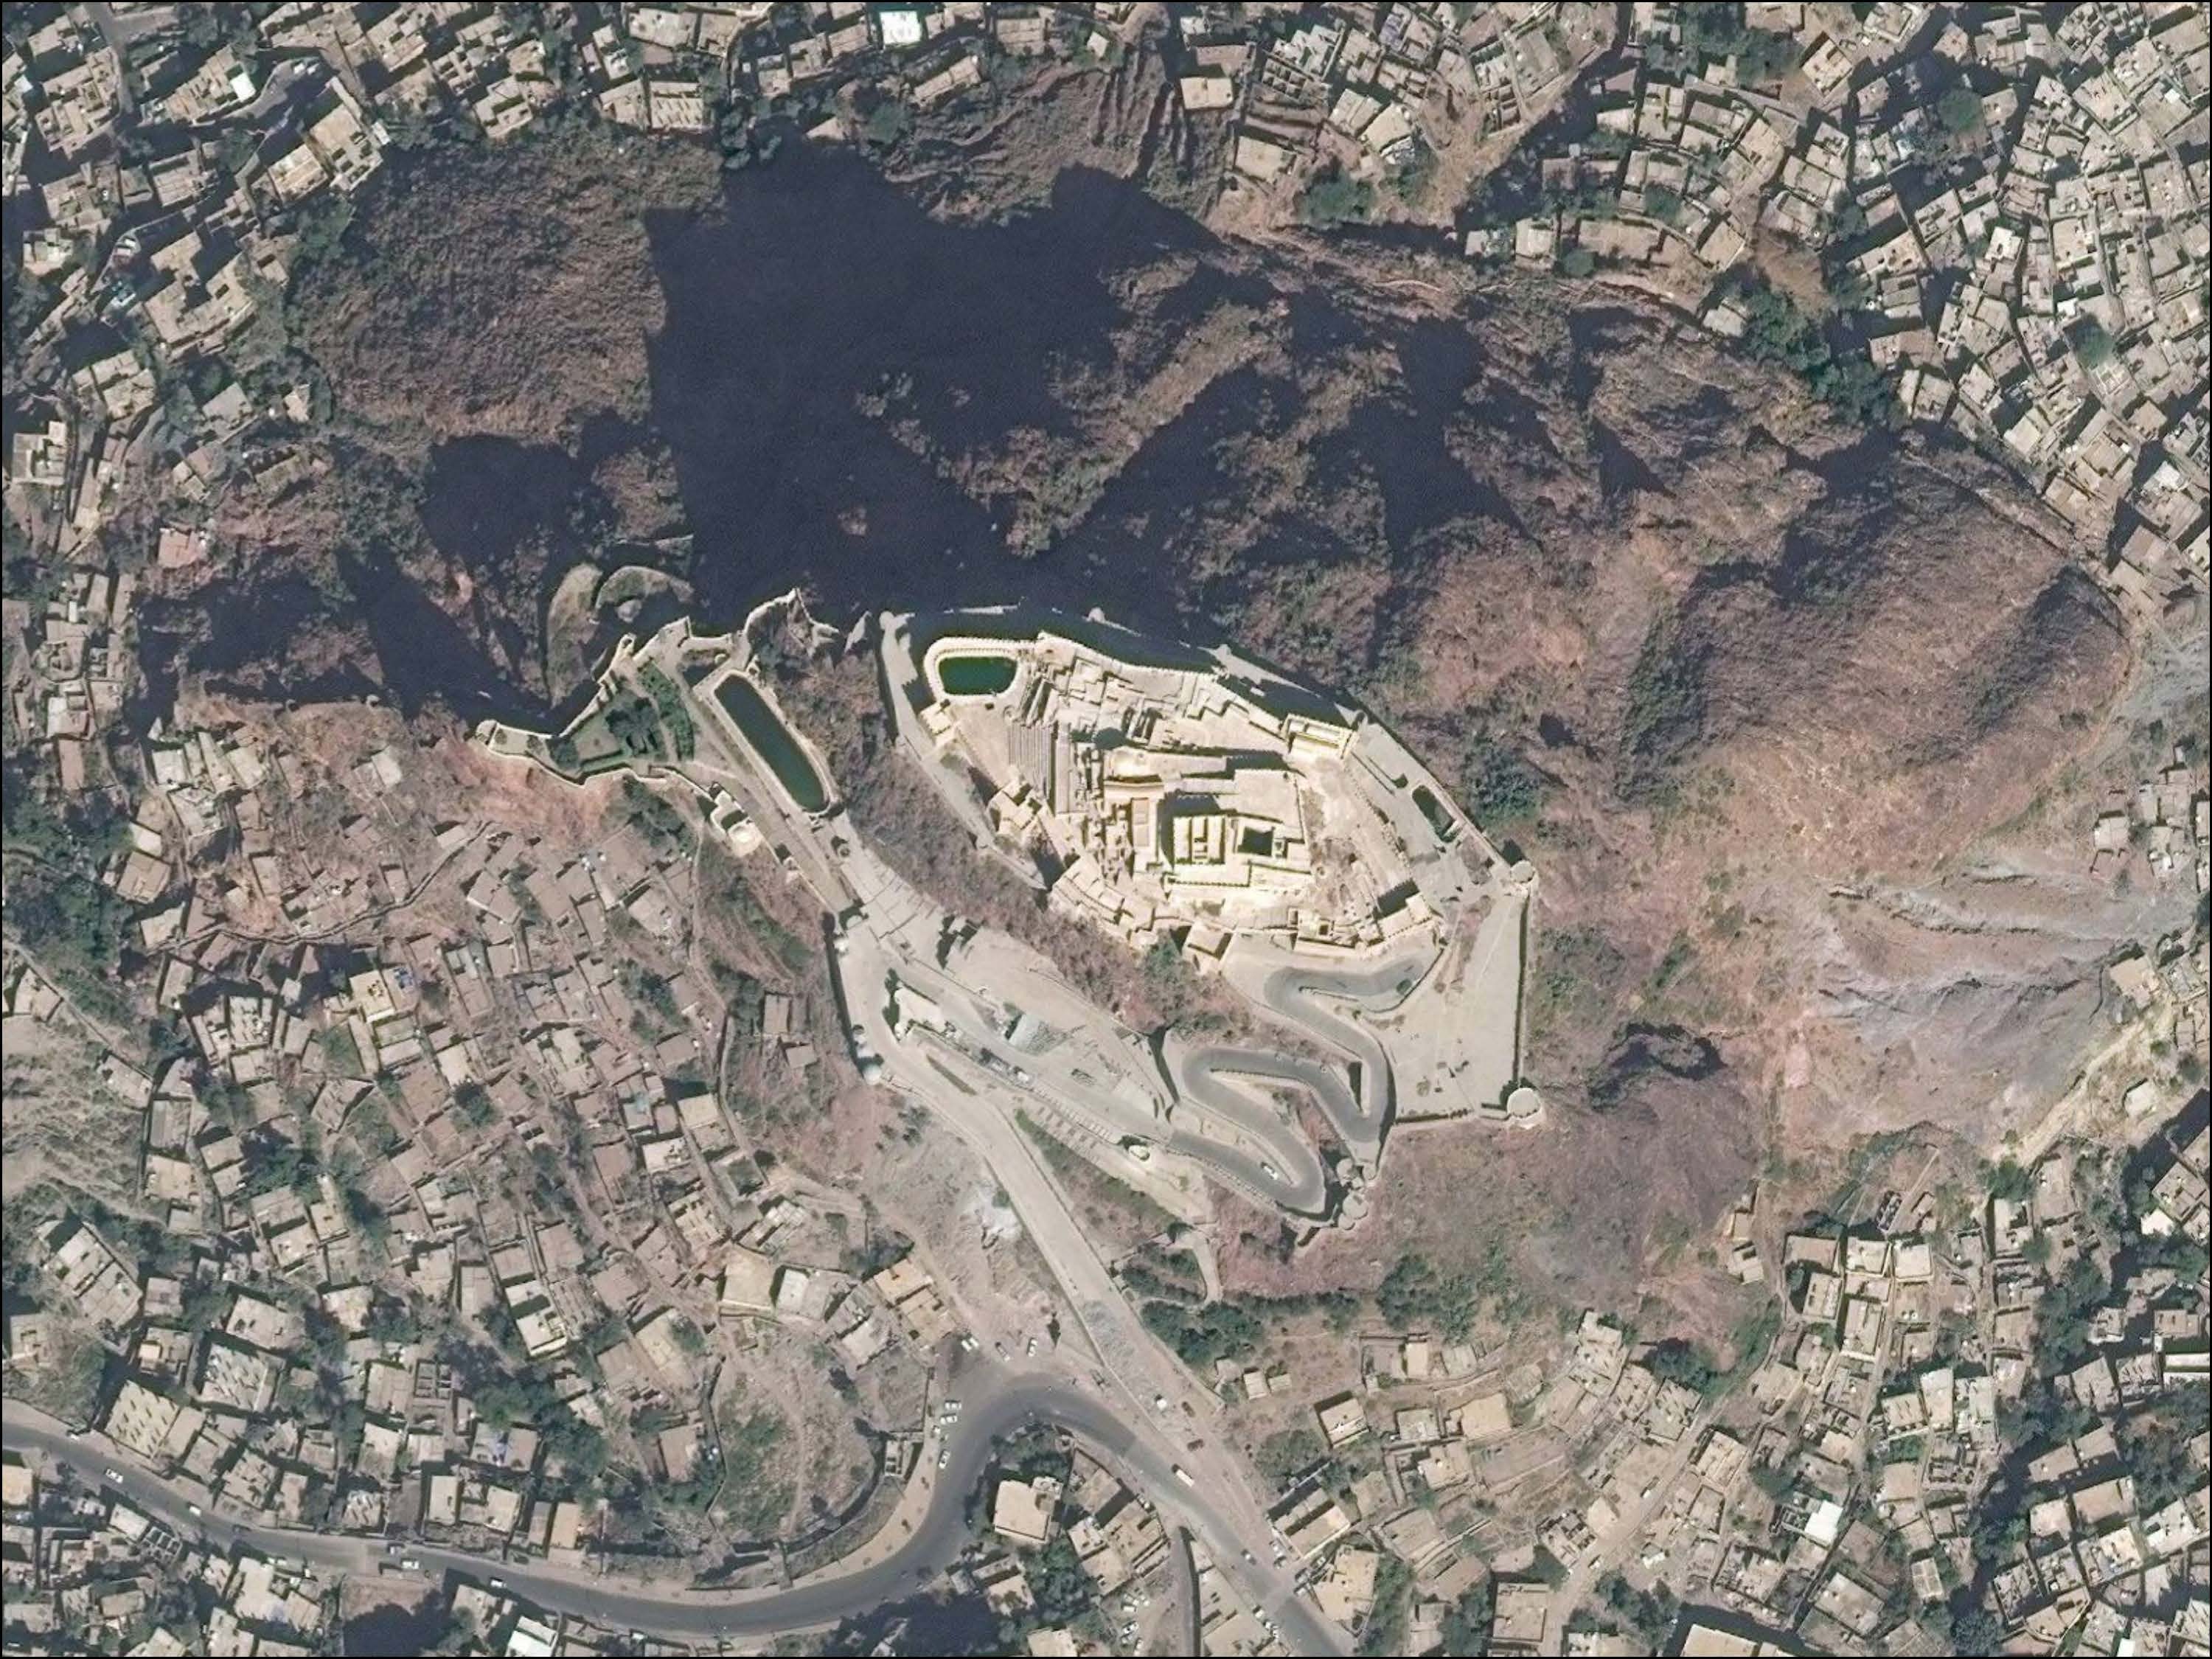 Cairo Citadel, Taiz